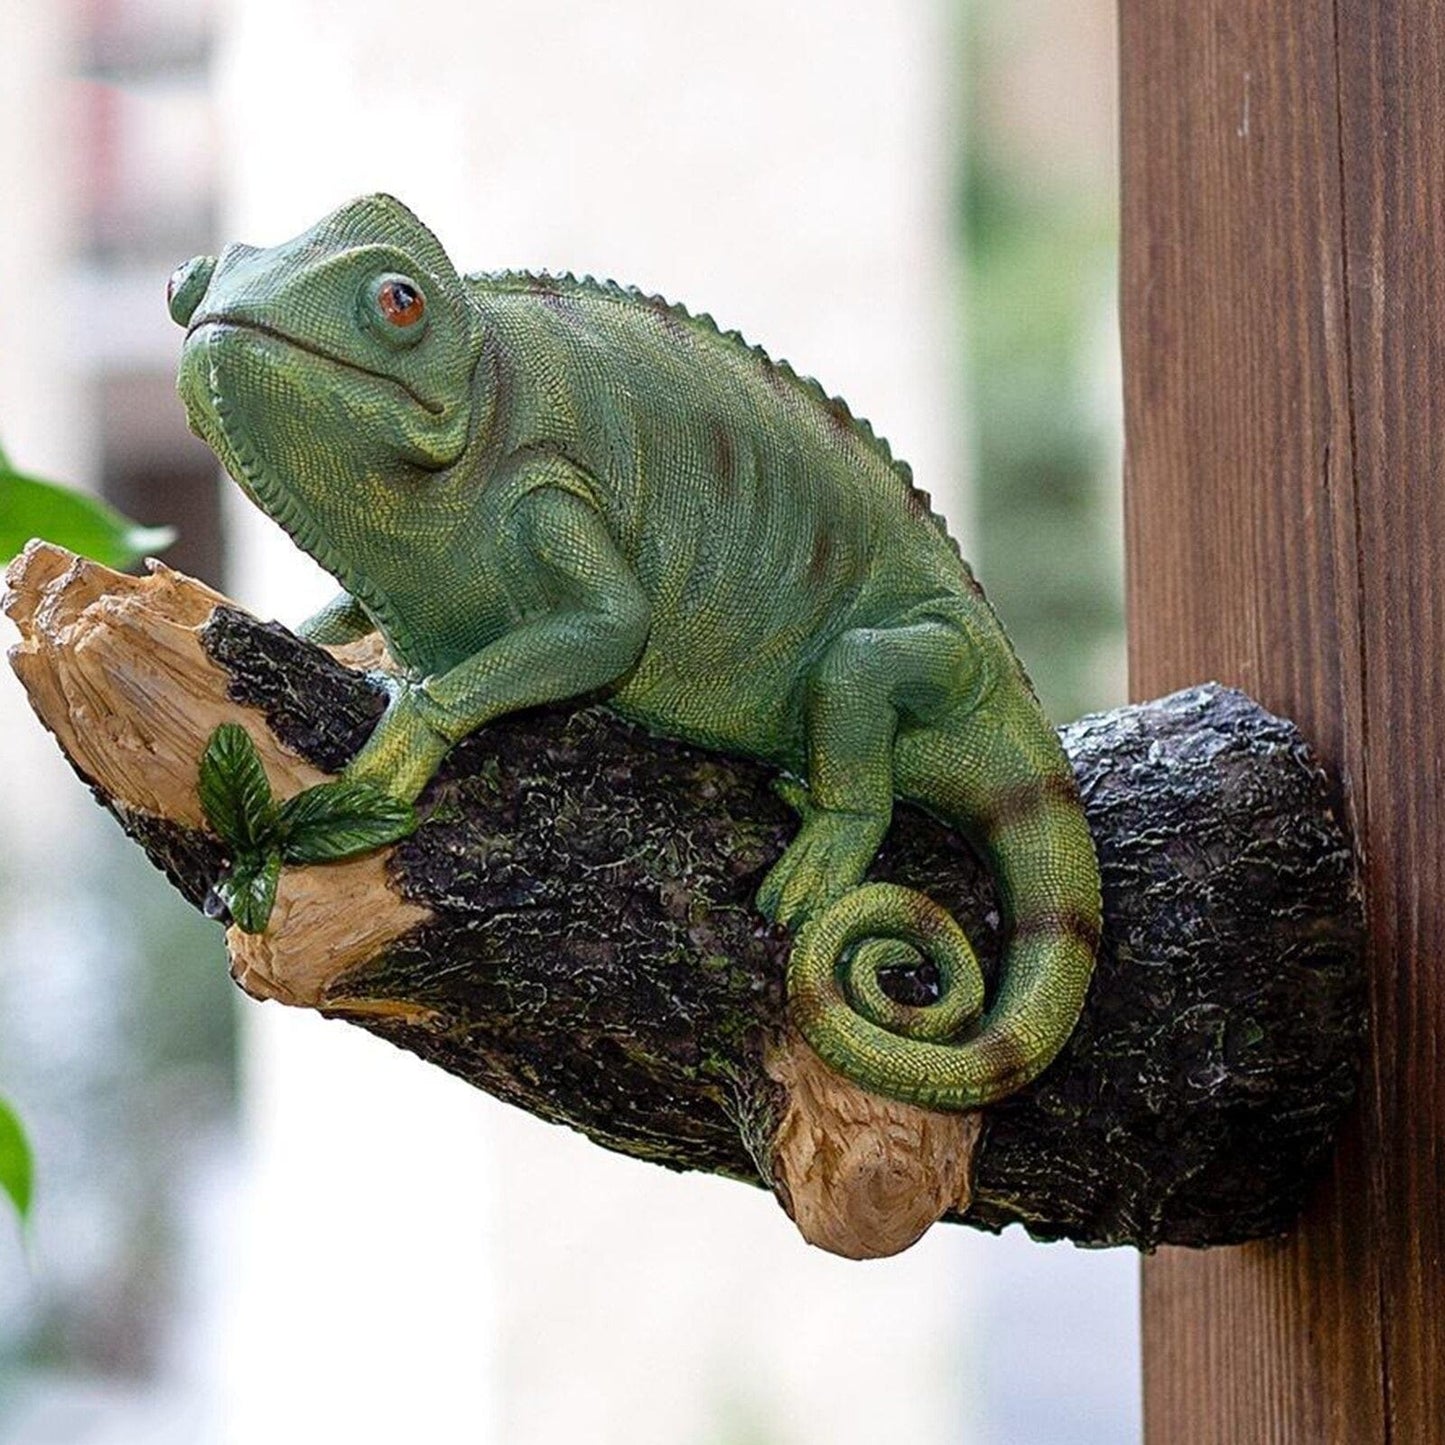 Figurina da camaleonte in resina sull'albero